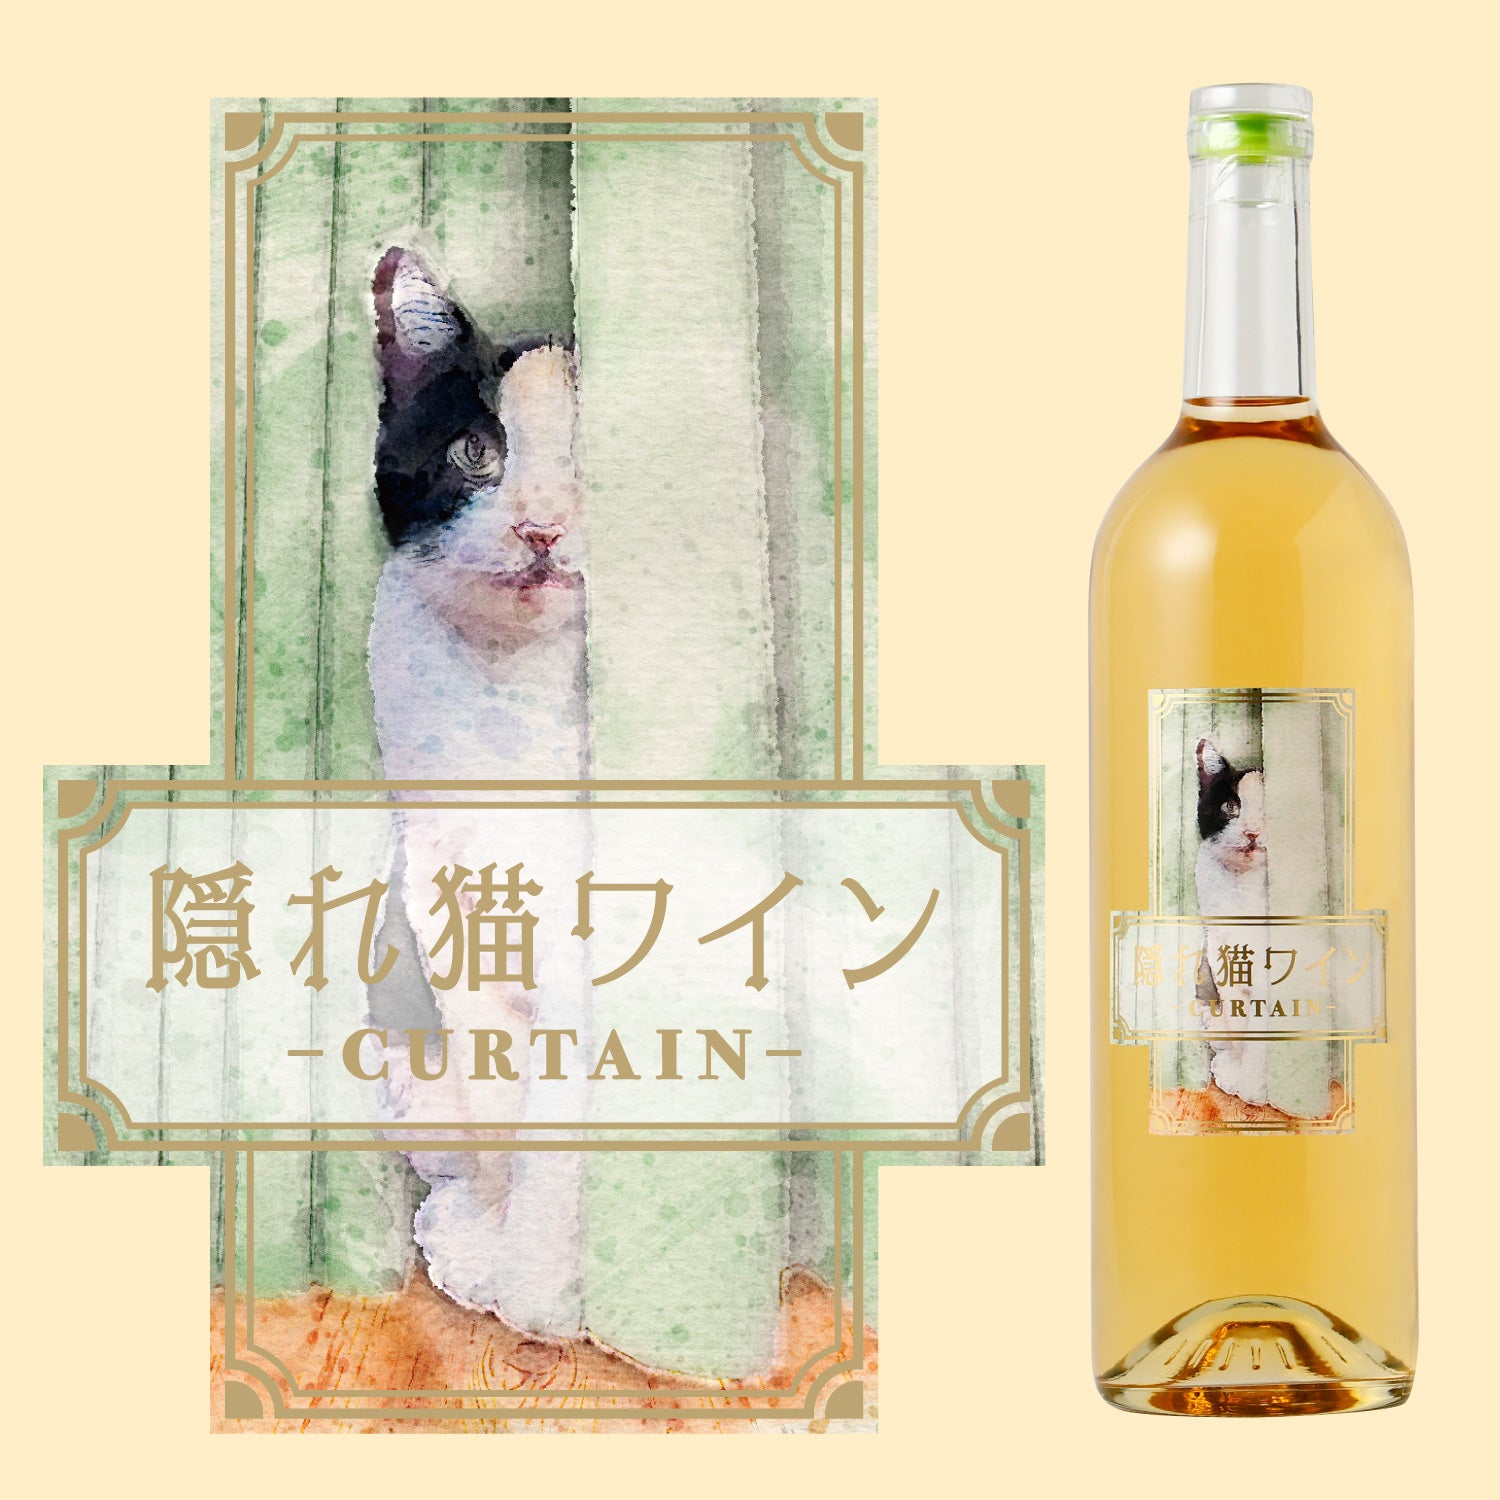 隠れ猫ワイン -カーテン-